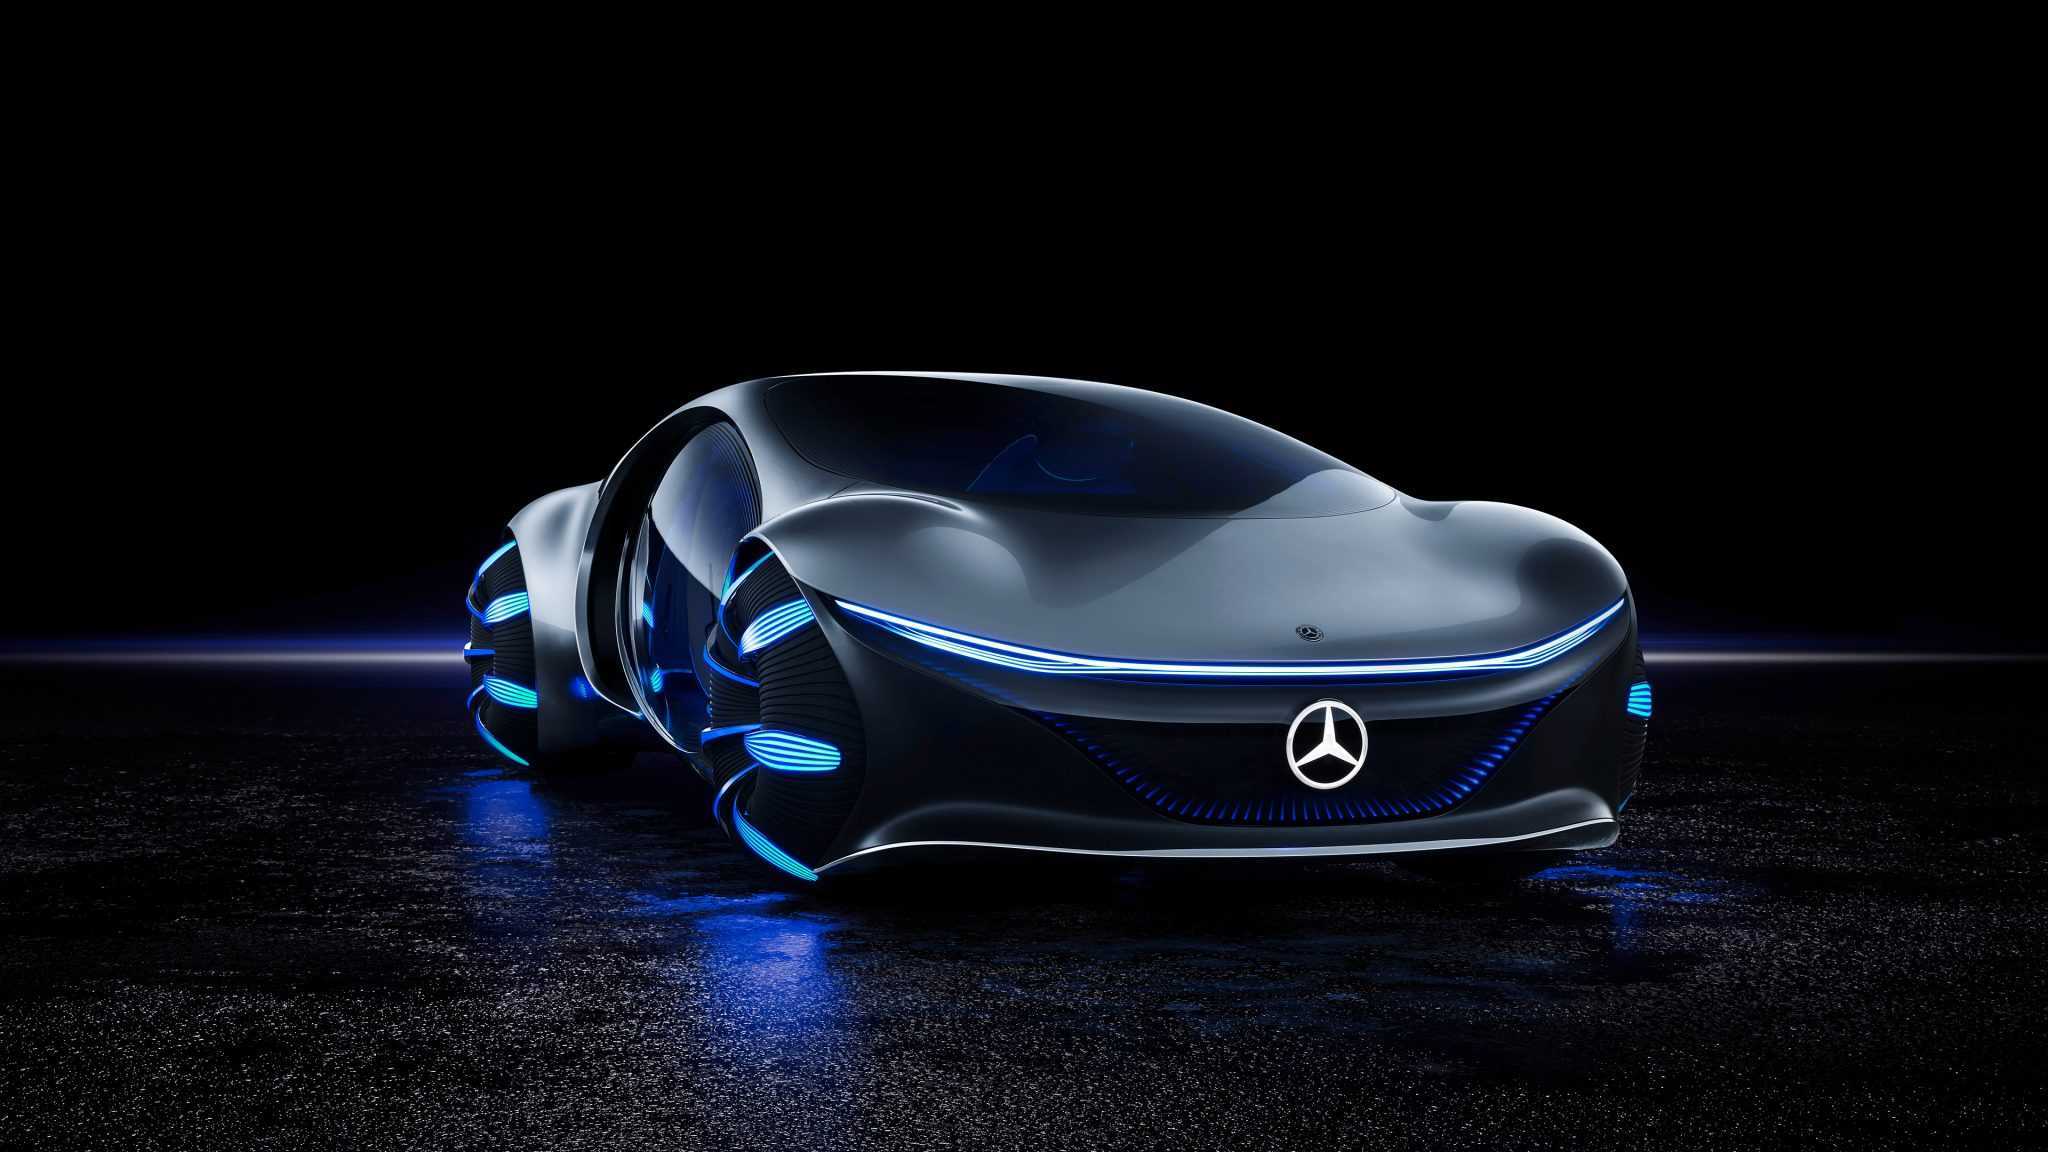 Mercedes-benz представил автомобиль будущего vision avtr из фильма аватар